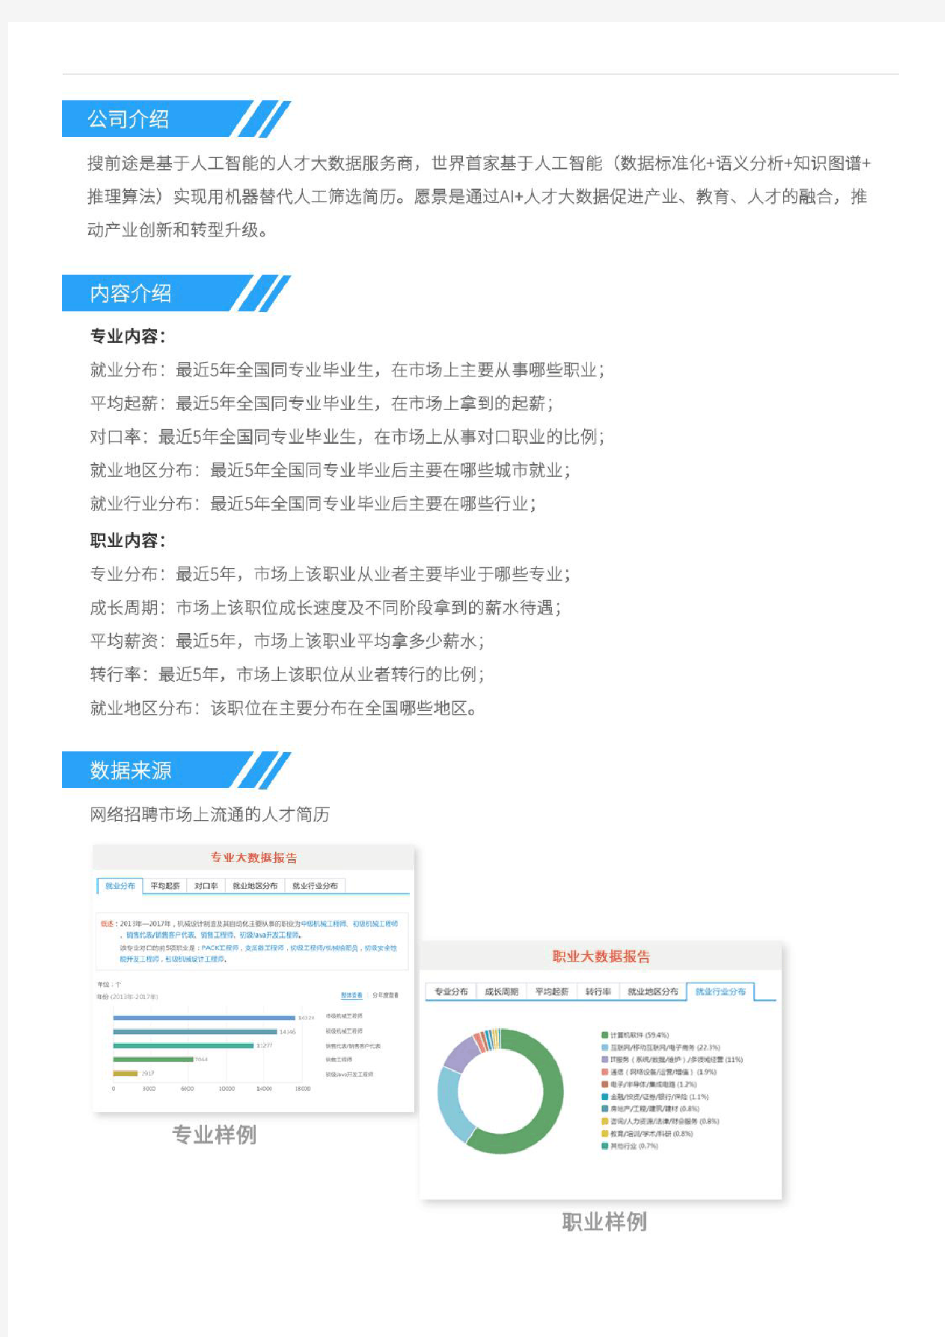 2013-2017年上海大学信息管理与信息系统专业毕业生就业大数据报告